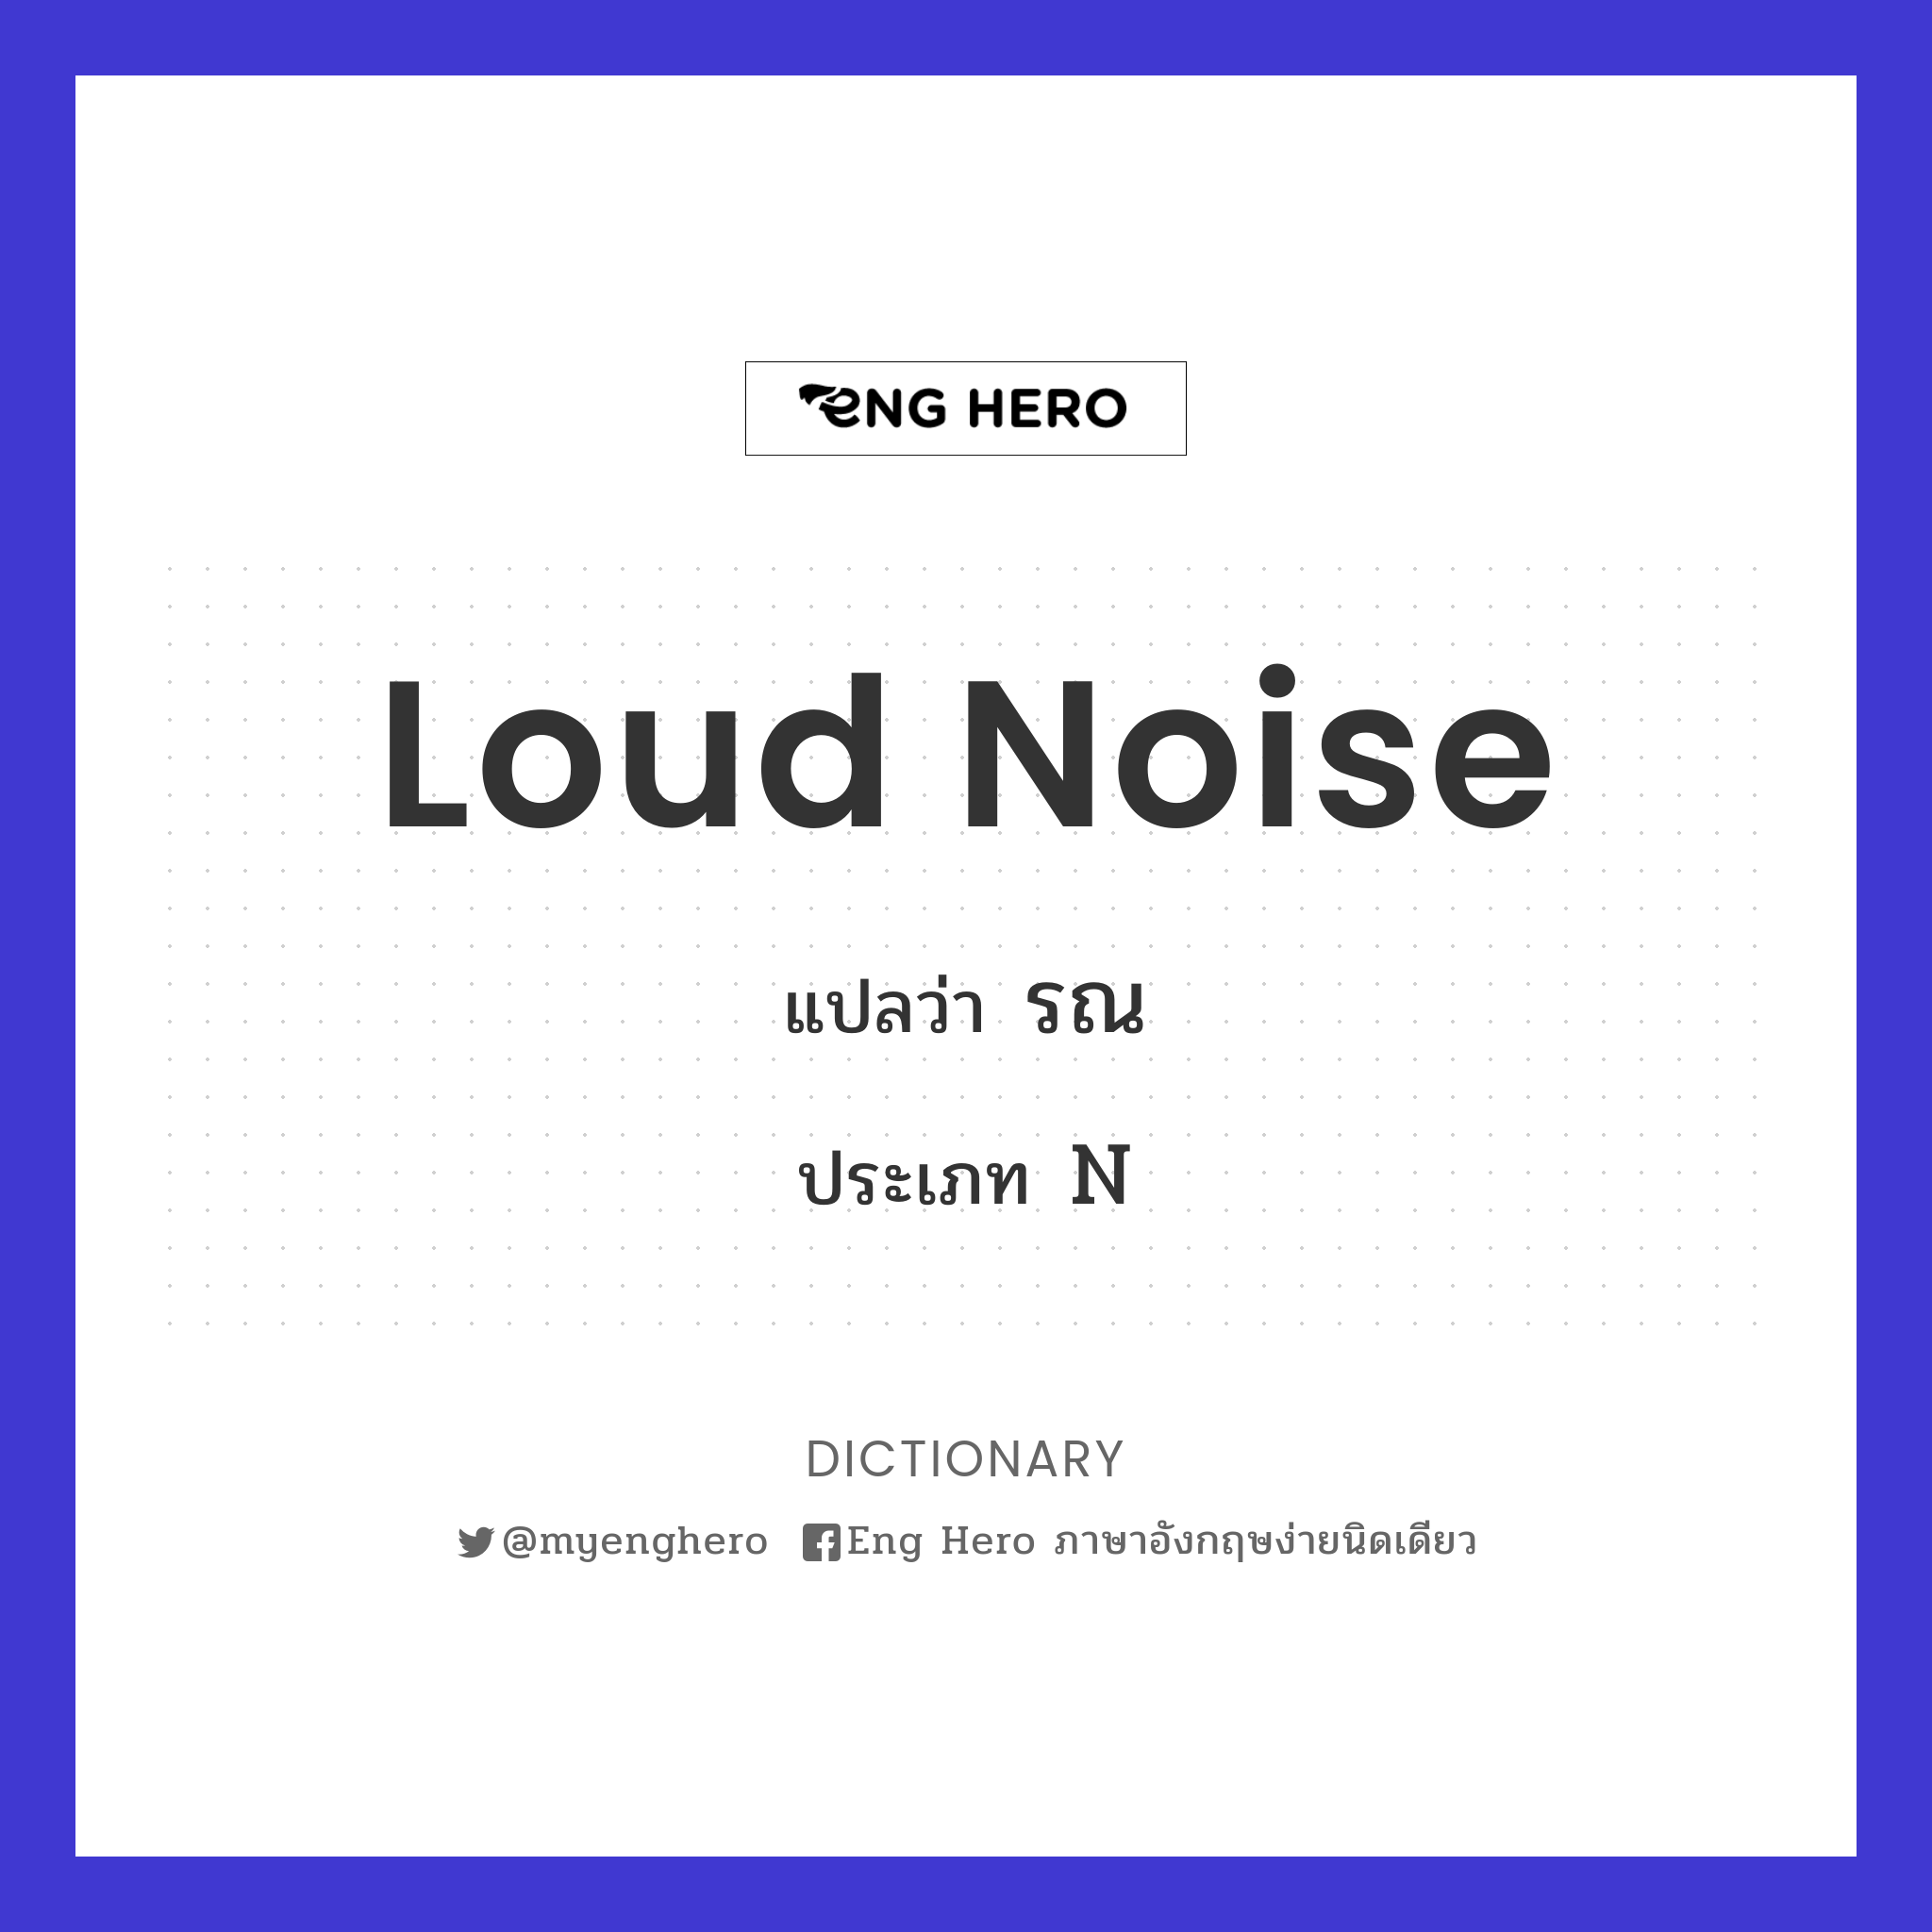 loud noise